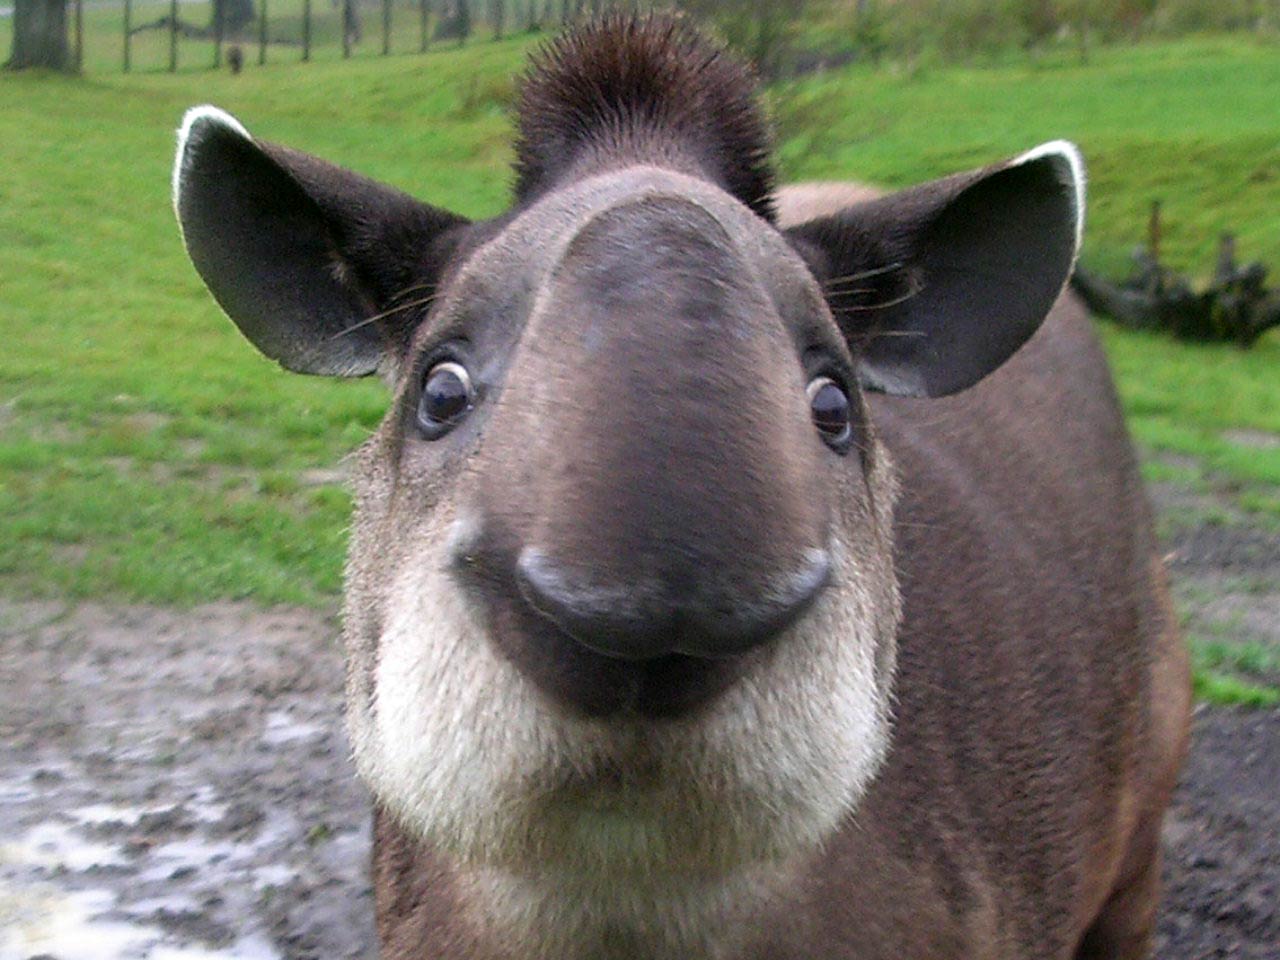 http://animalstown.com/animals/t/tapir/wallpapers/tapir-wallpaper-1.jpg